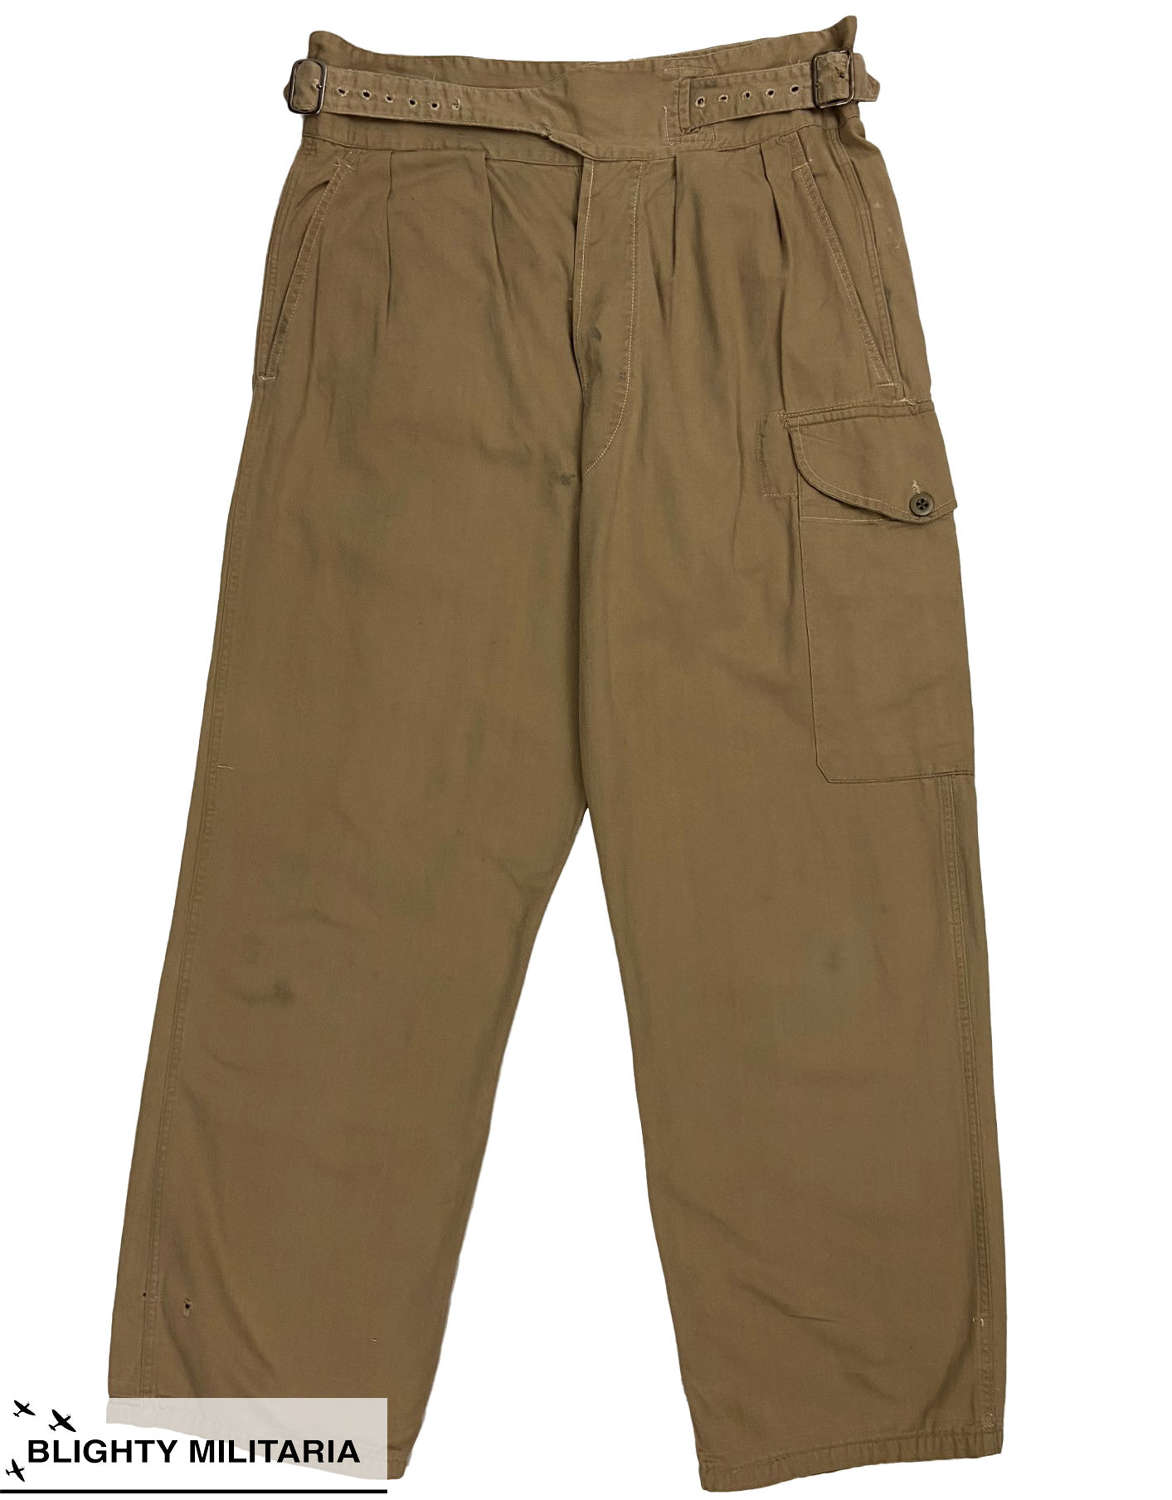 Original British Army 1950 Pattern Khaki Drill Trousers - Size 8